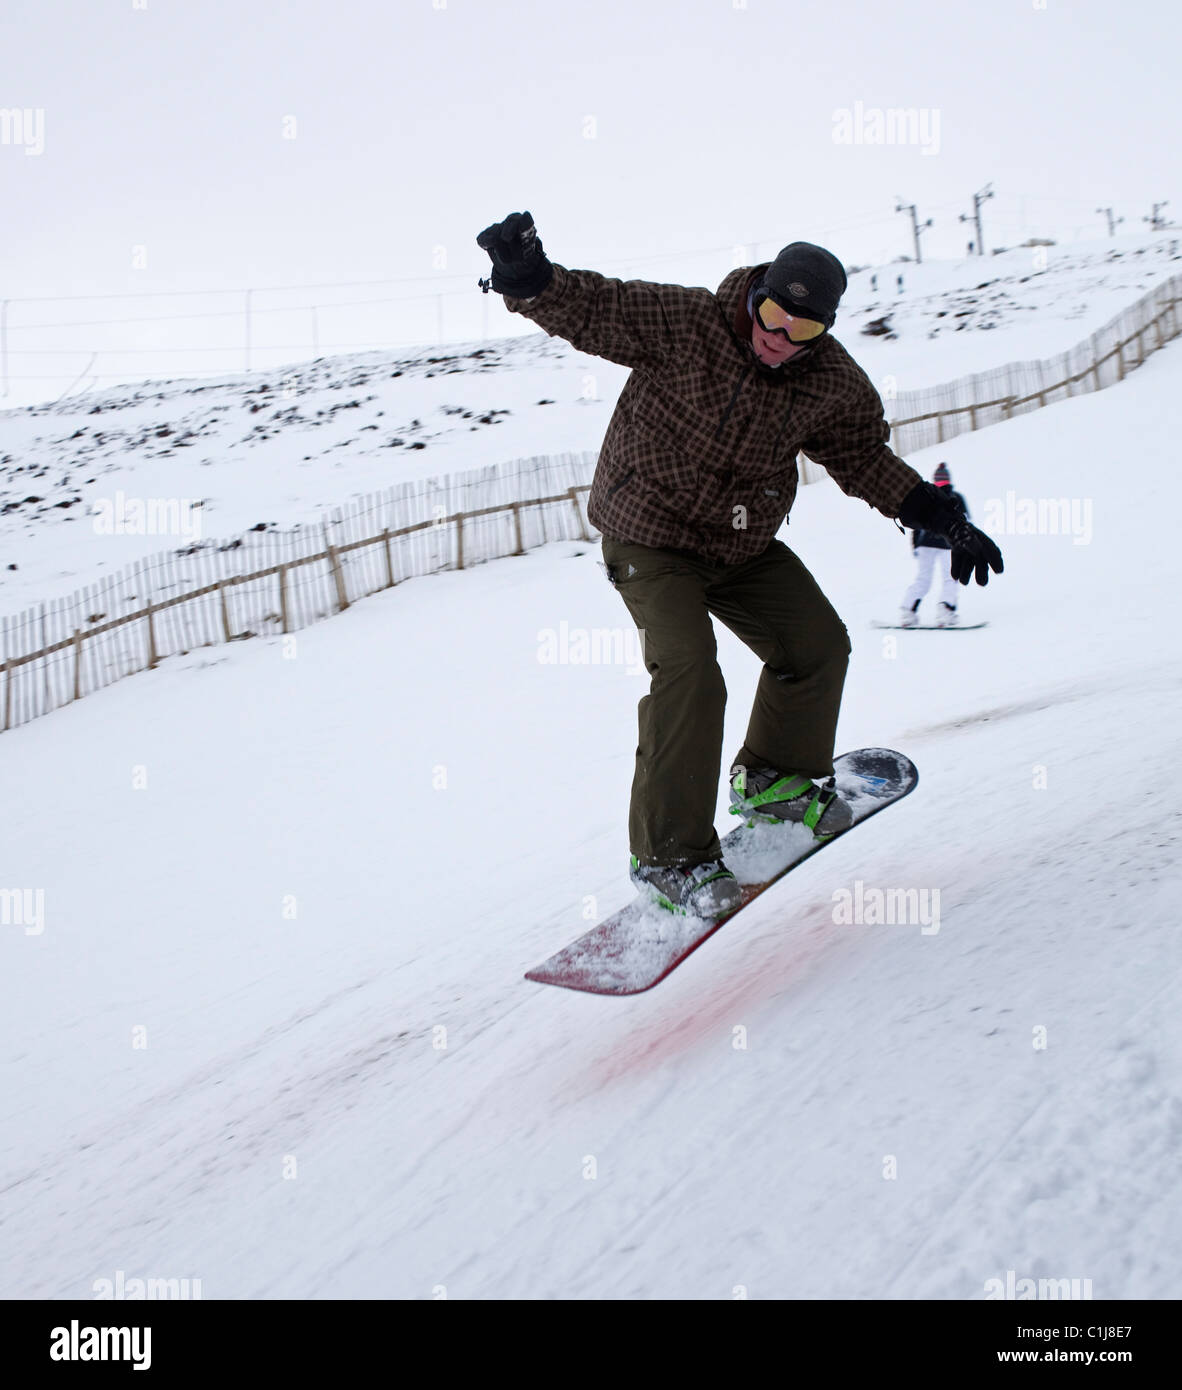 Centre de ski de Glenshee snowboarder jumping Ecosse Cairngorms UK Europe Banque D'Images